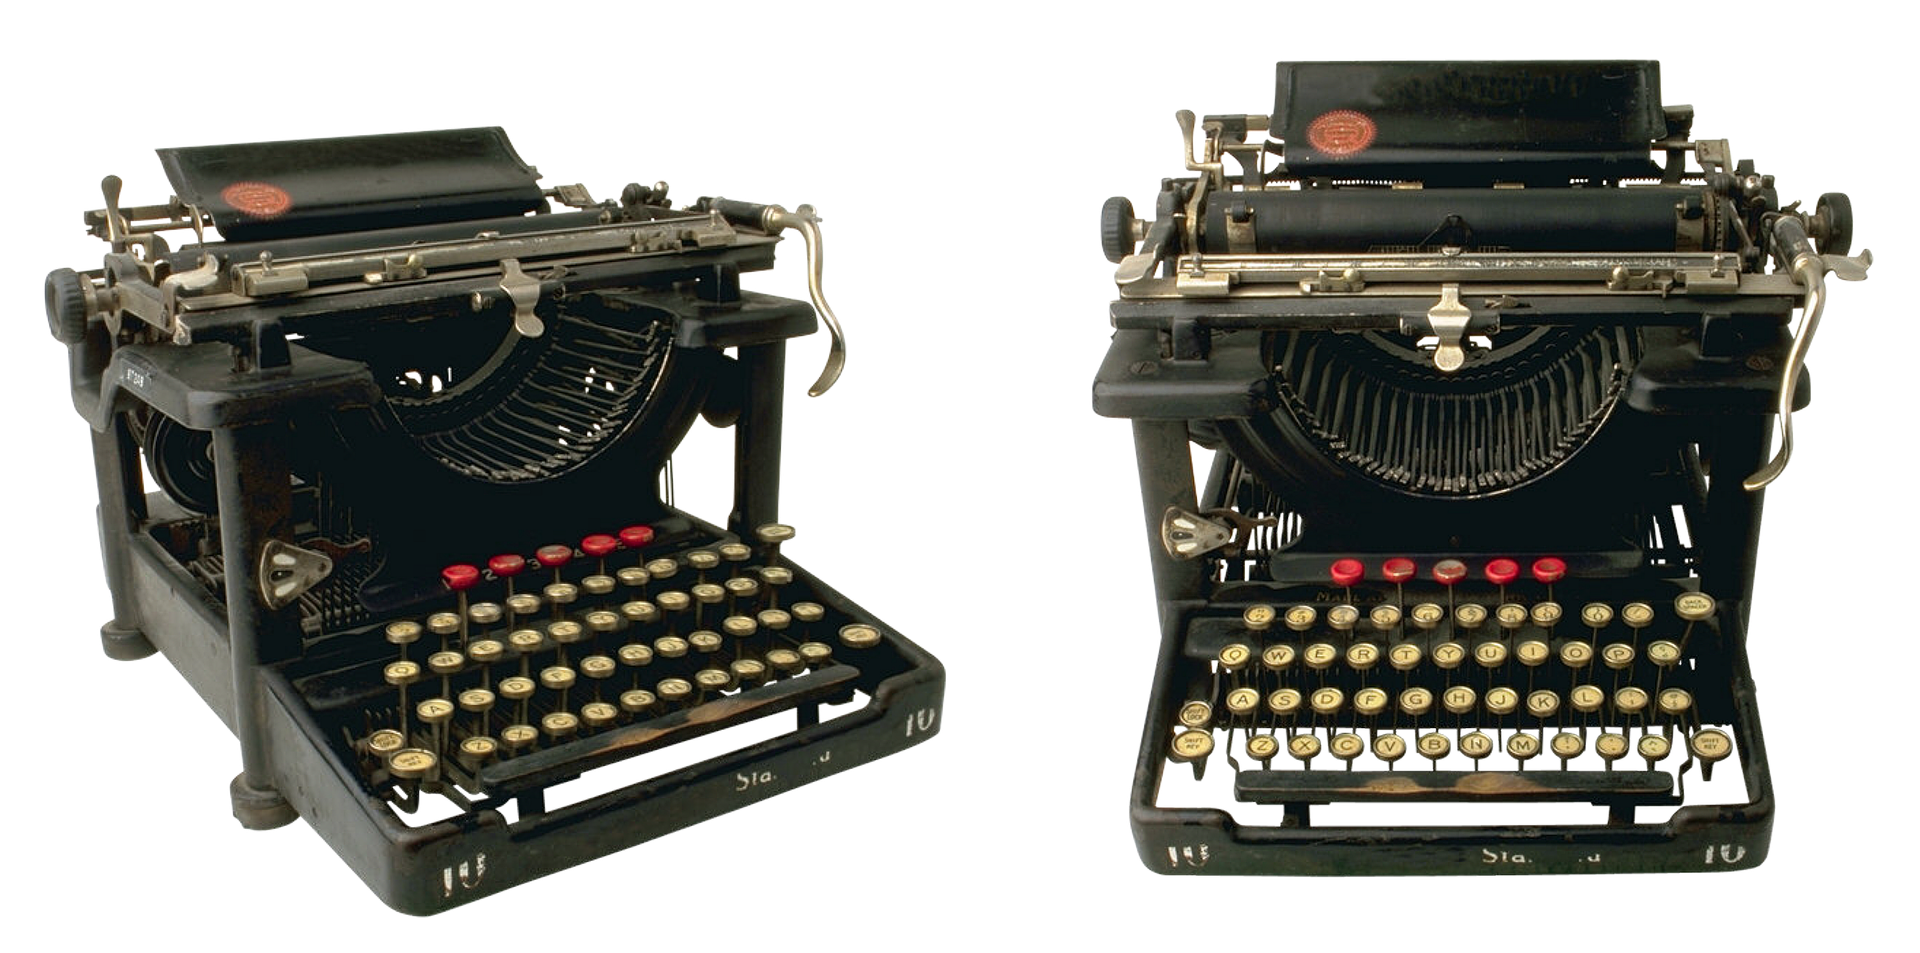 Old typewriter photo